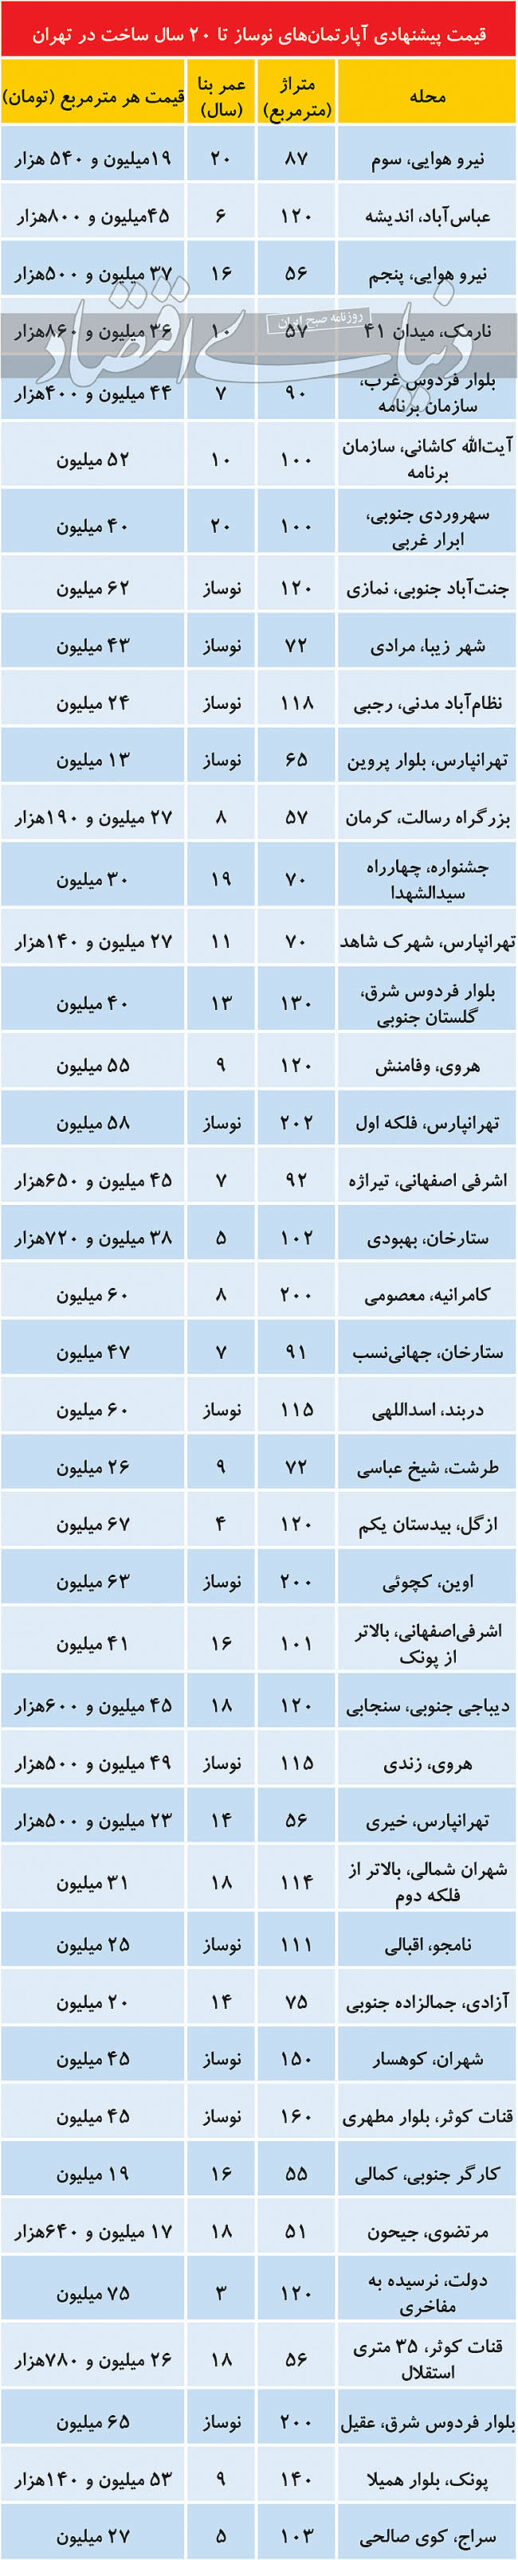 قیمت آپارتمان در بازار معاملات مسکن تهران